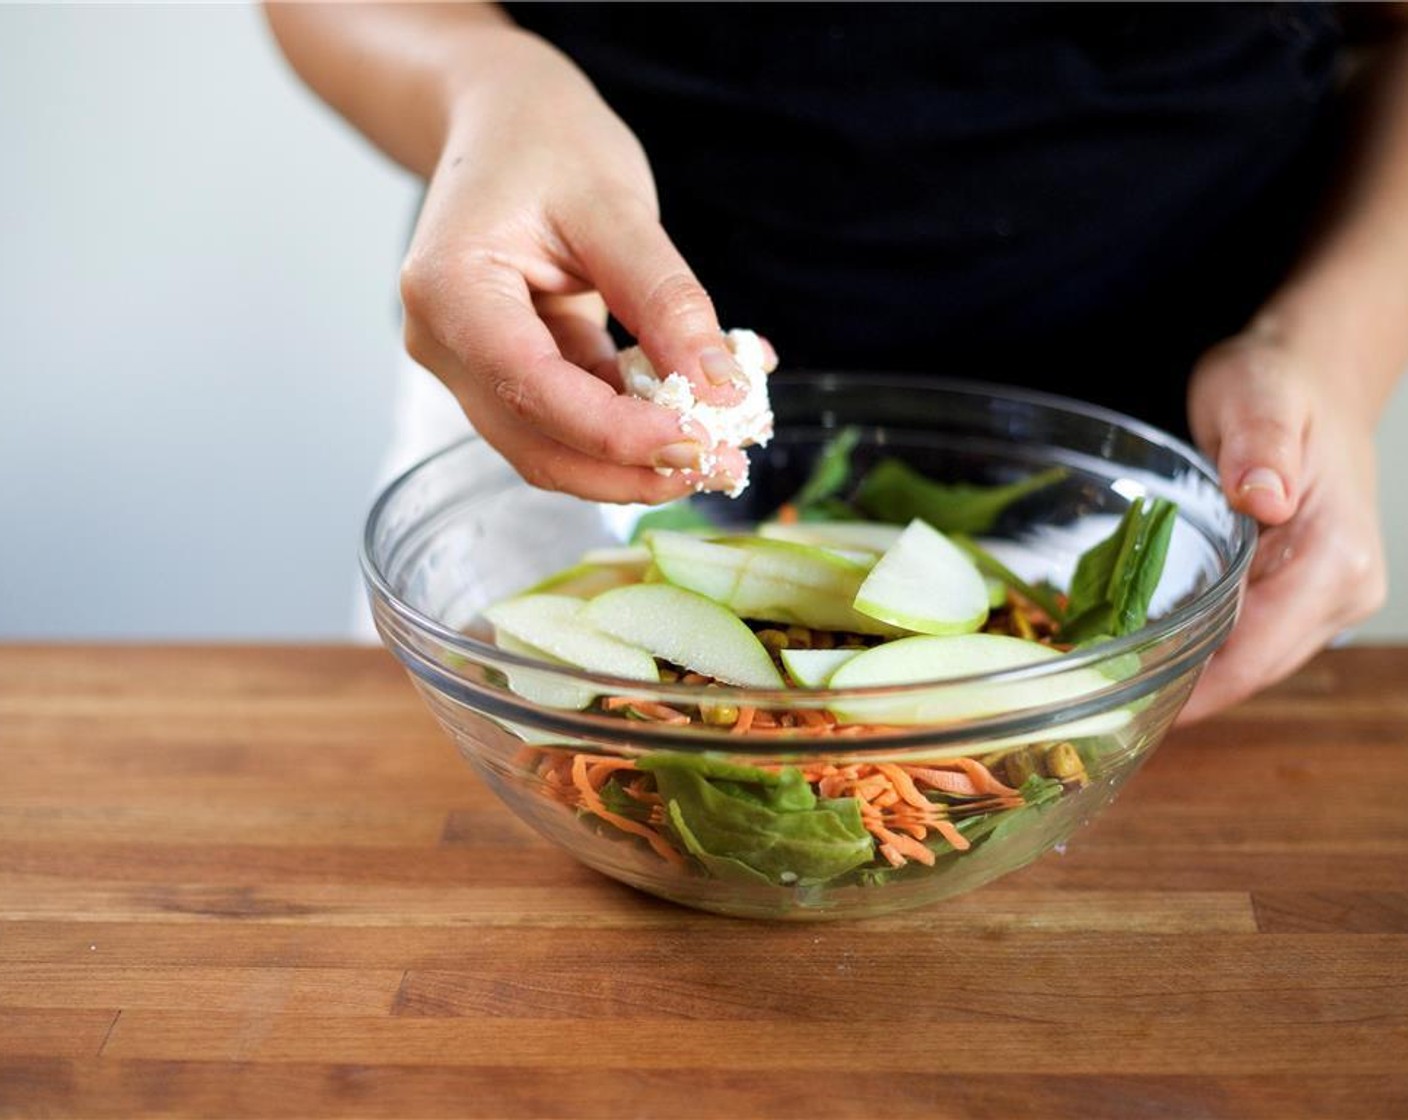 Schritt 6 Ziegenkäse (55 g) mit der Hand in kleine Stücke zerbröseln und gleichmässig über den Salat verteilen.